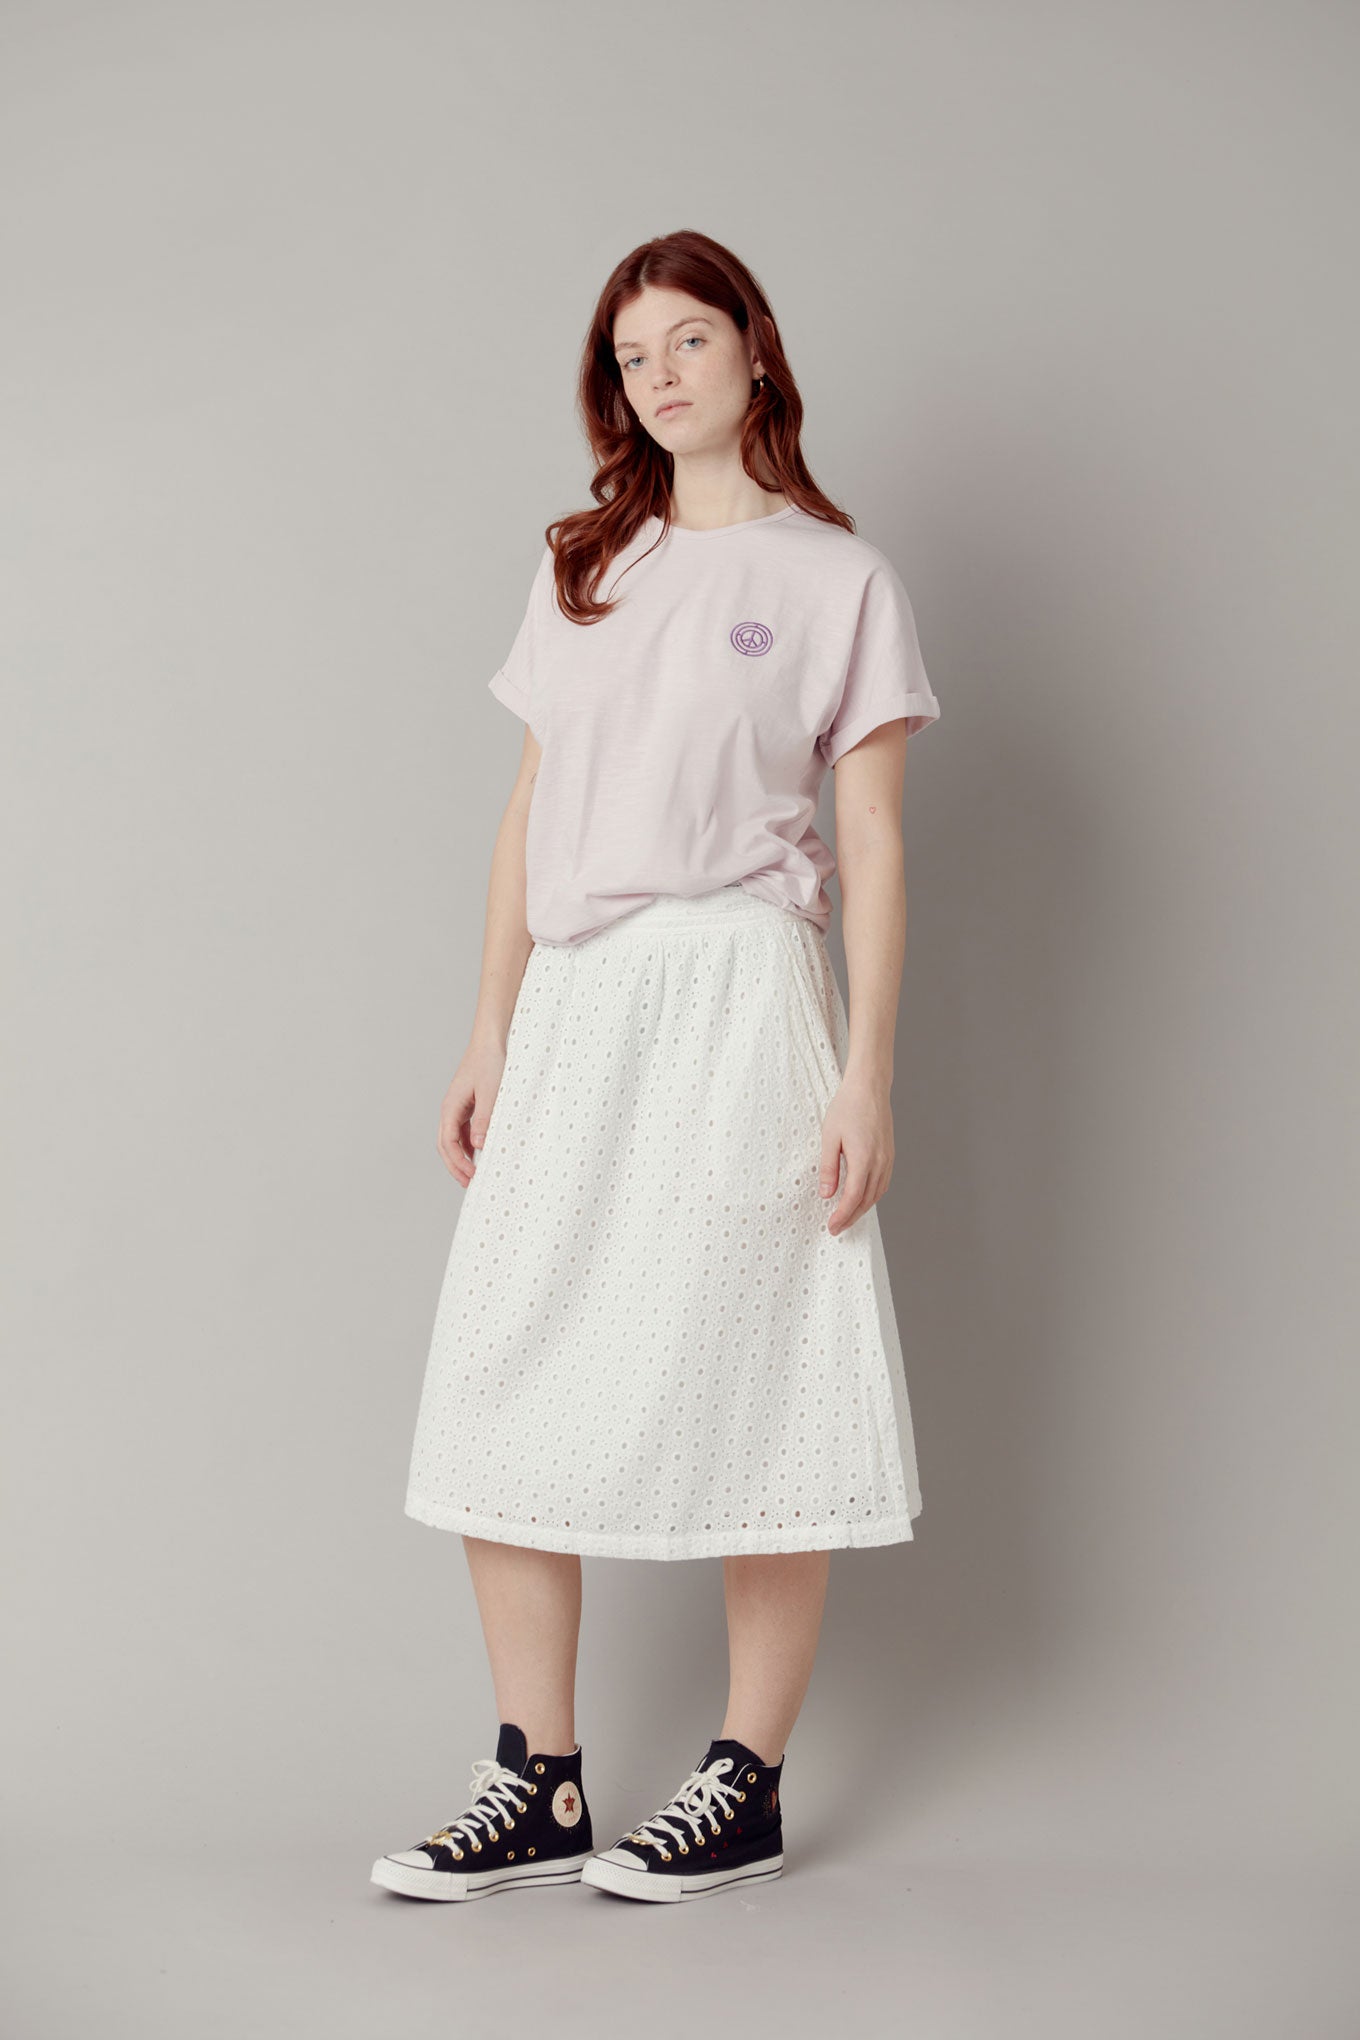 NAMI Organic Cotton Midi Skirt - White, SIZE 4 / UK 14 / EUR 42